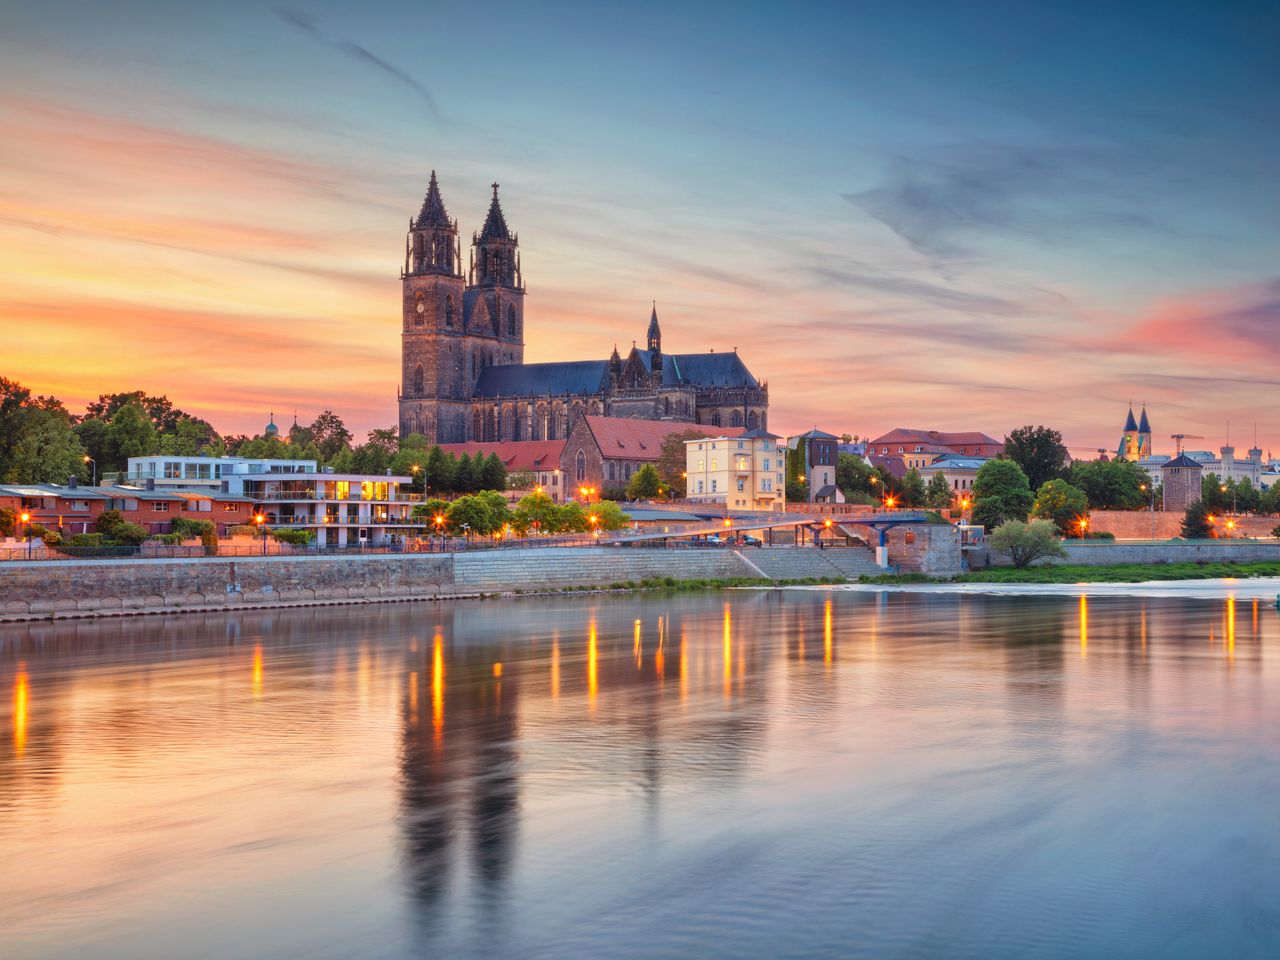 Erlebnisreicher Städtetrip in Magdeburg an der Elbe